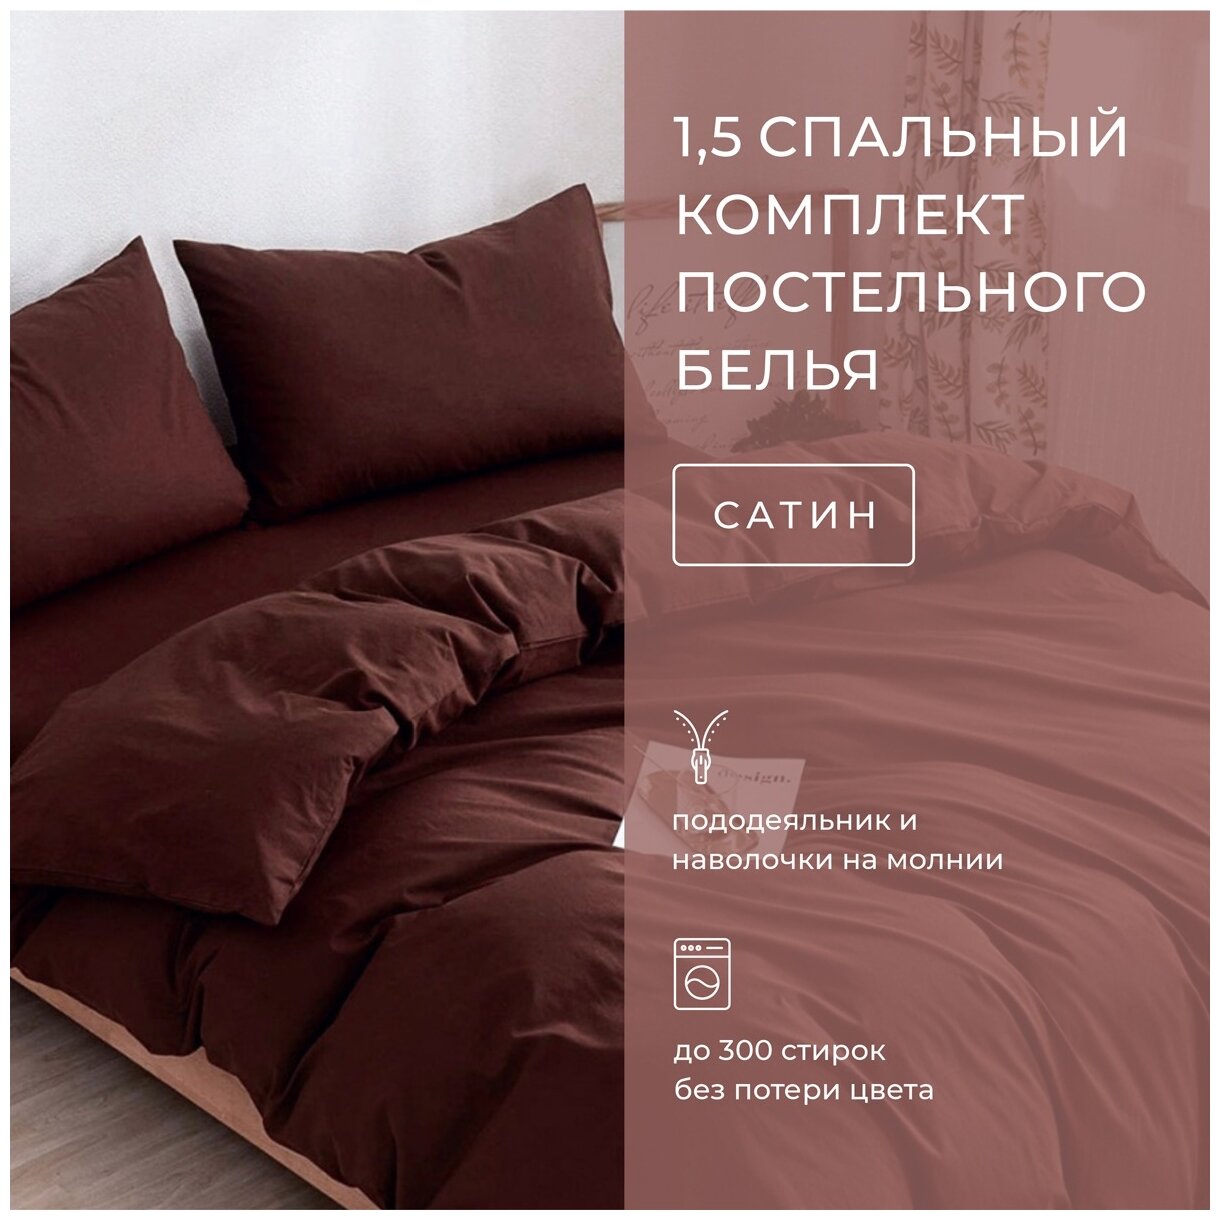 Комплект постельного белья Grazia-Textile 1,5 спальный коричневый, Сатин, наволочки 50x70 2 шт. - фотография № 2